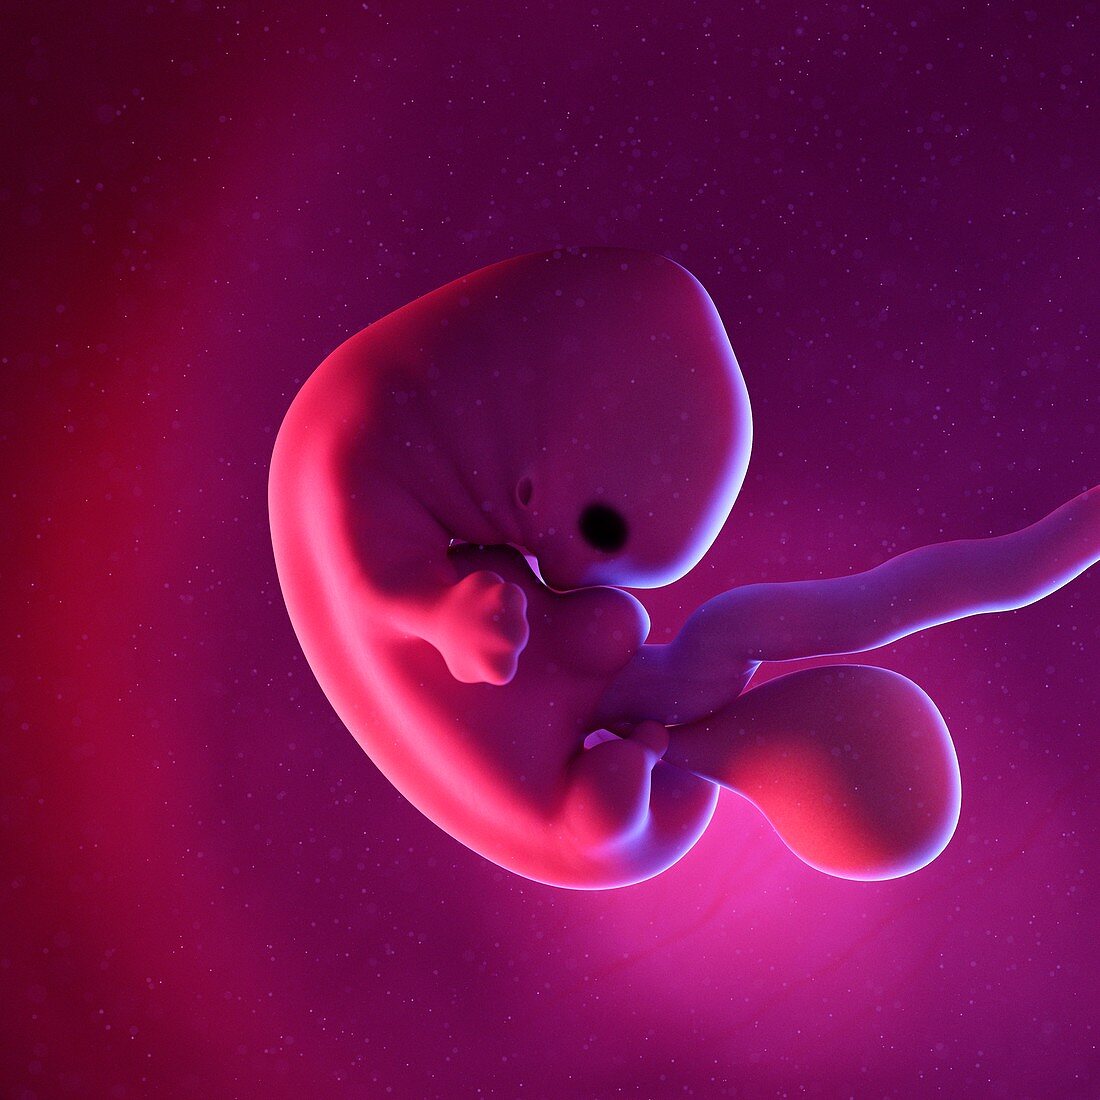 Fetus at week 7, illustration